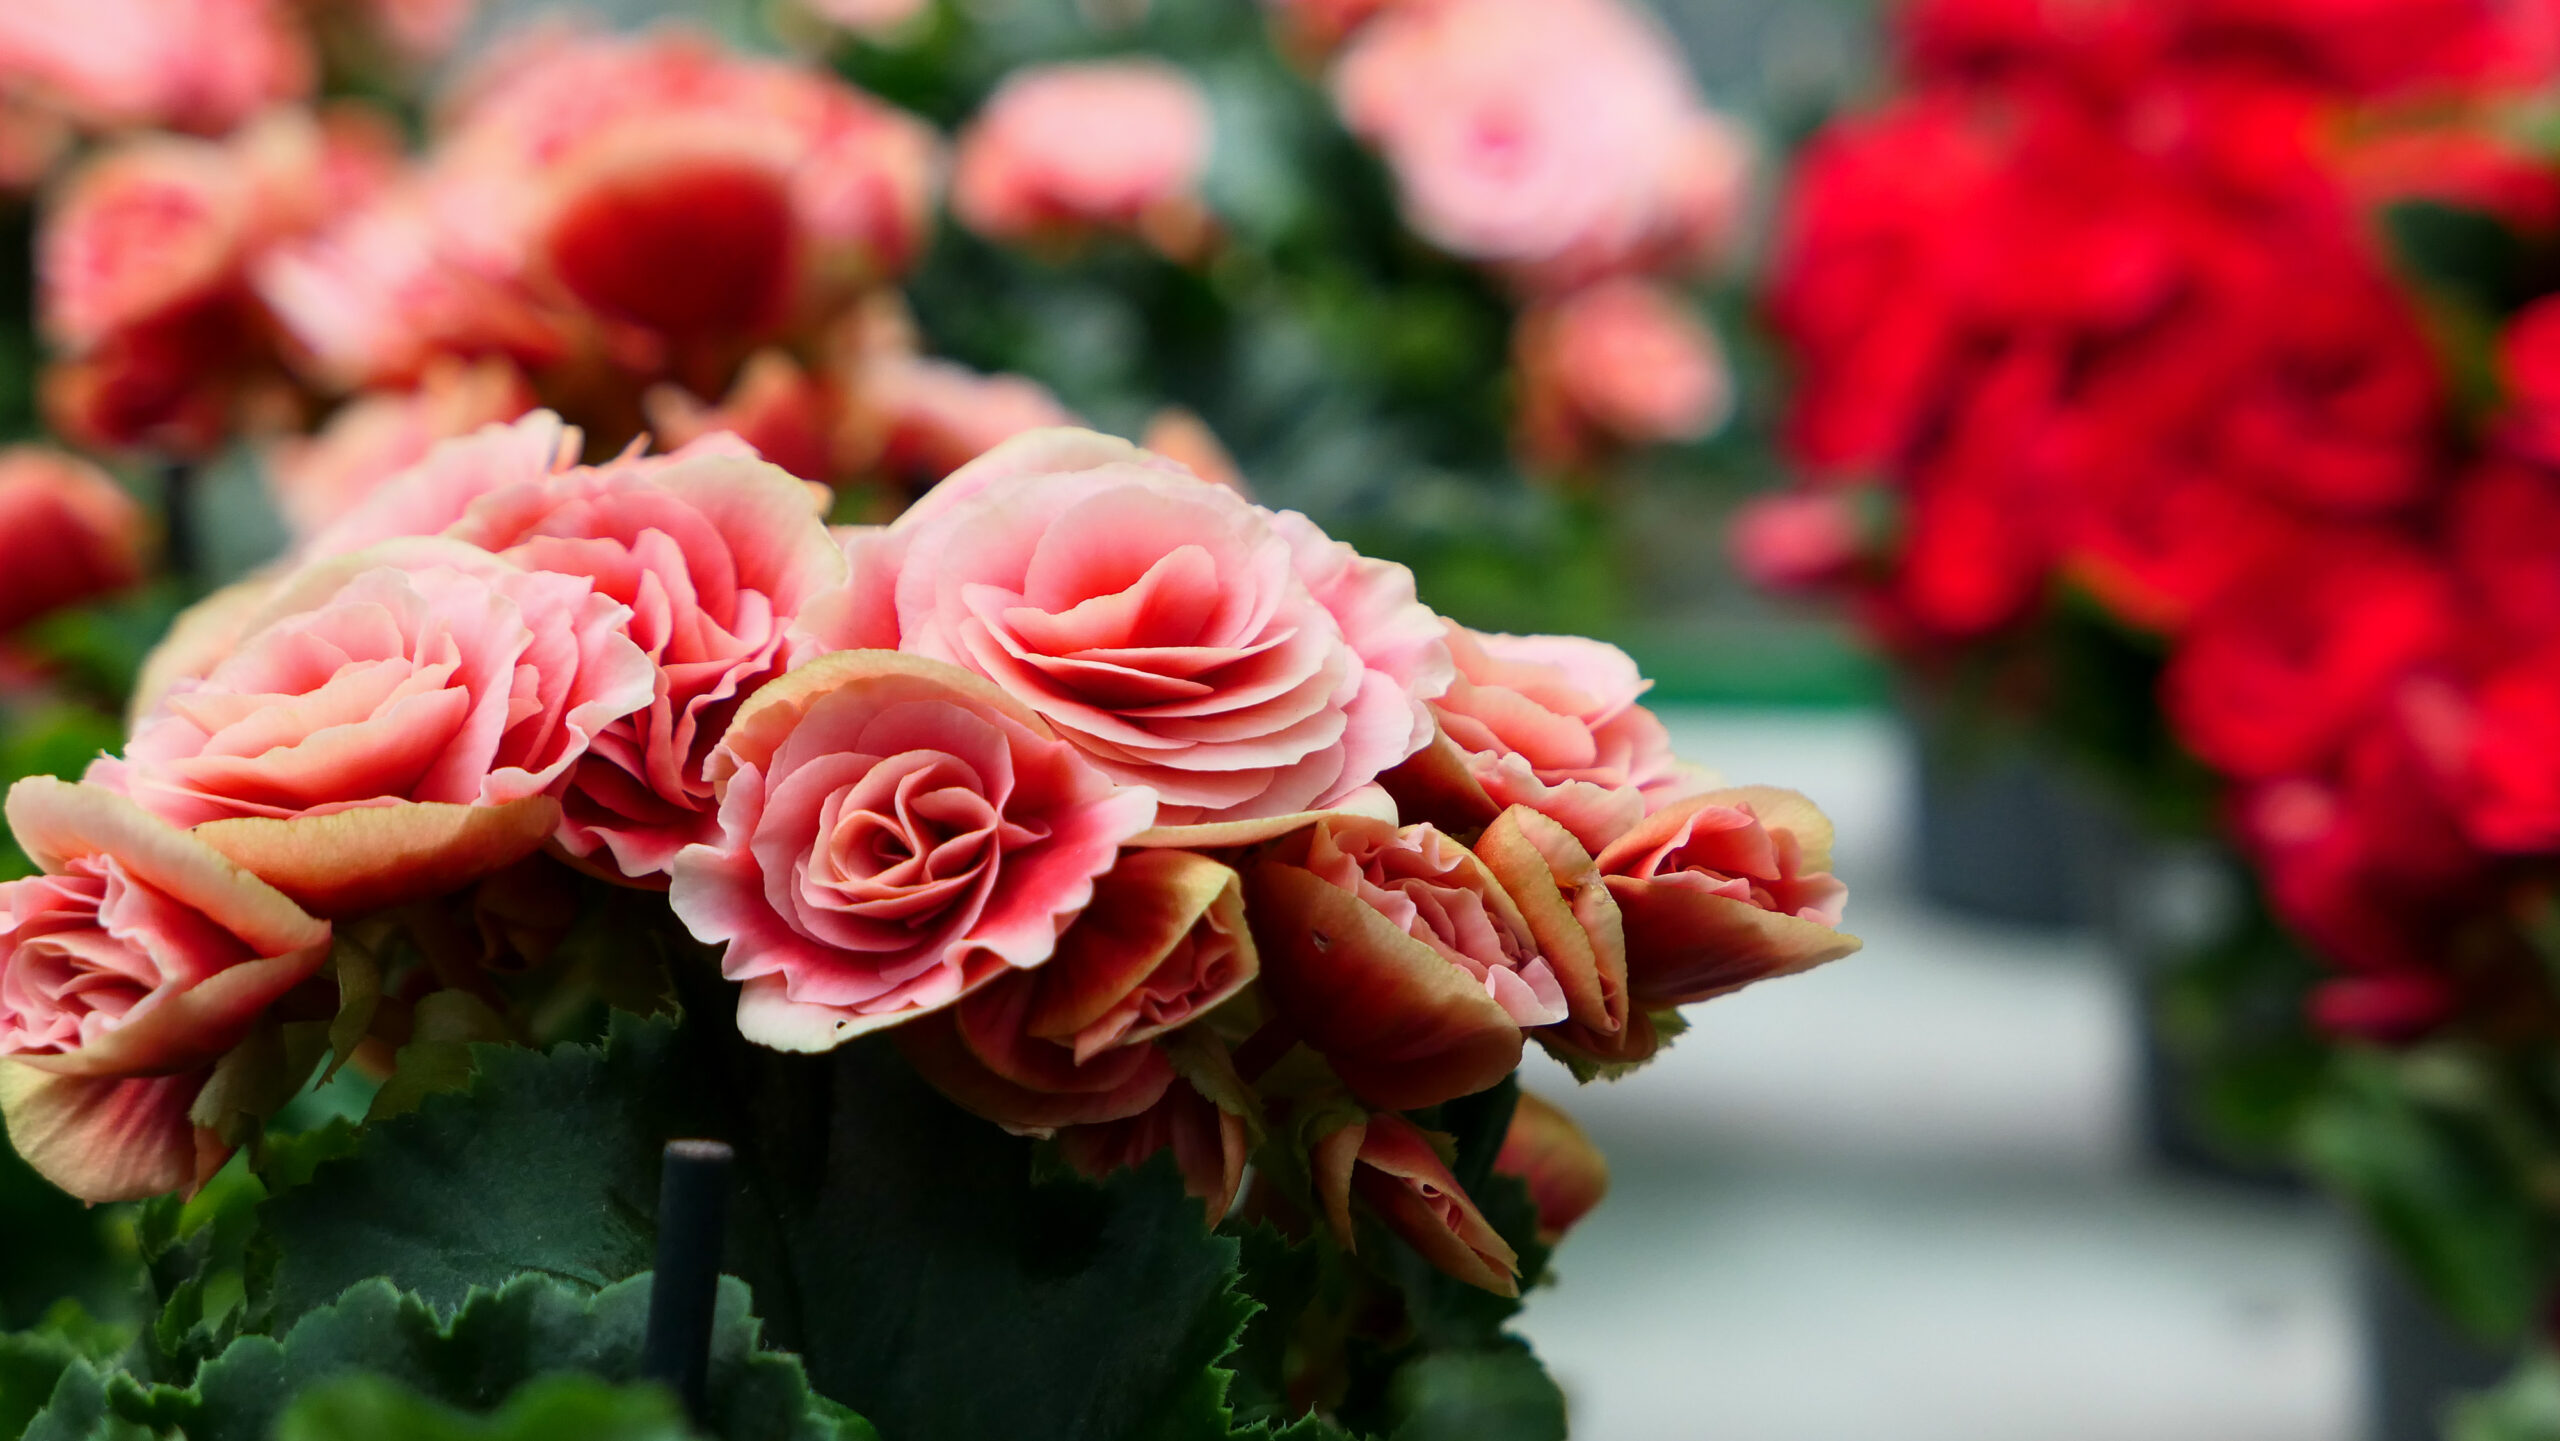 Na zdjęciu widać piękną różową begonię, która prezentuje się bardzo efektownie dzięki swoim intensywnym kolorom i delikatnym płatkom. Roślina ta jest doskonałym wyborem do uprawy w doniczkach i doskonale sprawdzi się jako ozdoba każdego wnętrza. Zdjęcie to doskonale ilustruje, jak piękne i efektowne kwiaty można uprawiać w domowych warunkach, co pozwala na cieszenie się ich pięknem niezależnie od pory roku.